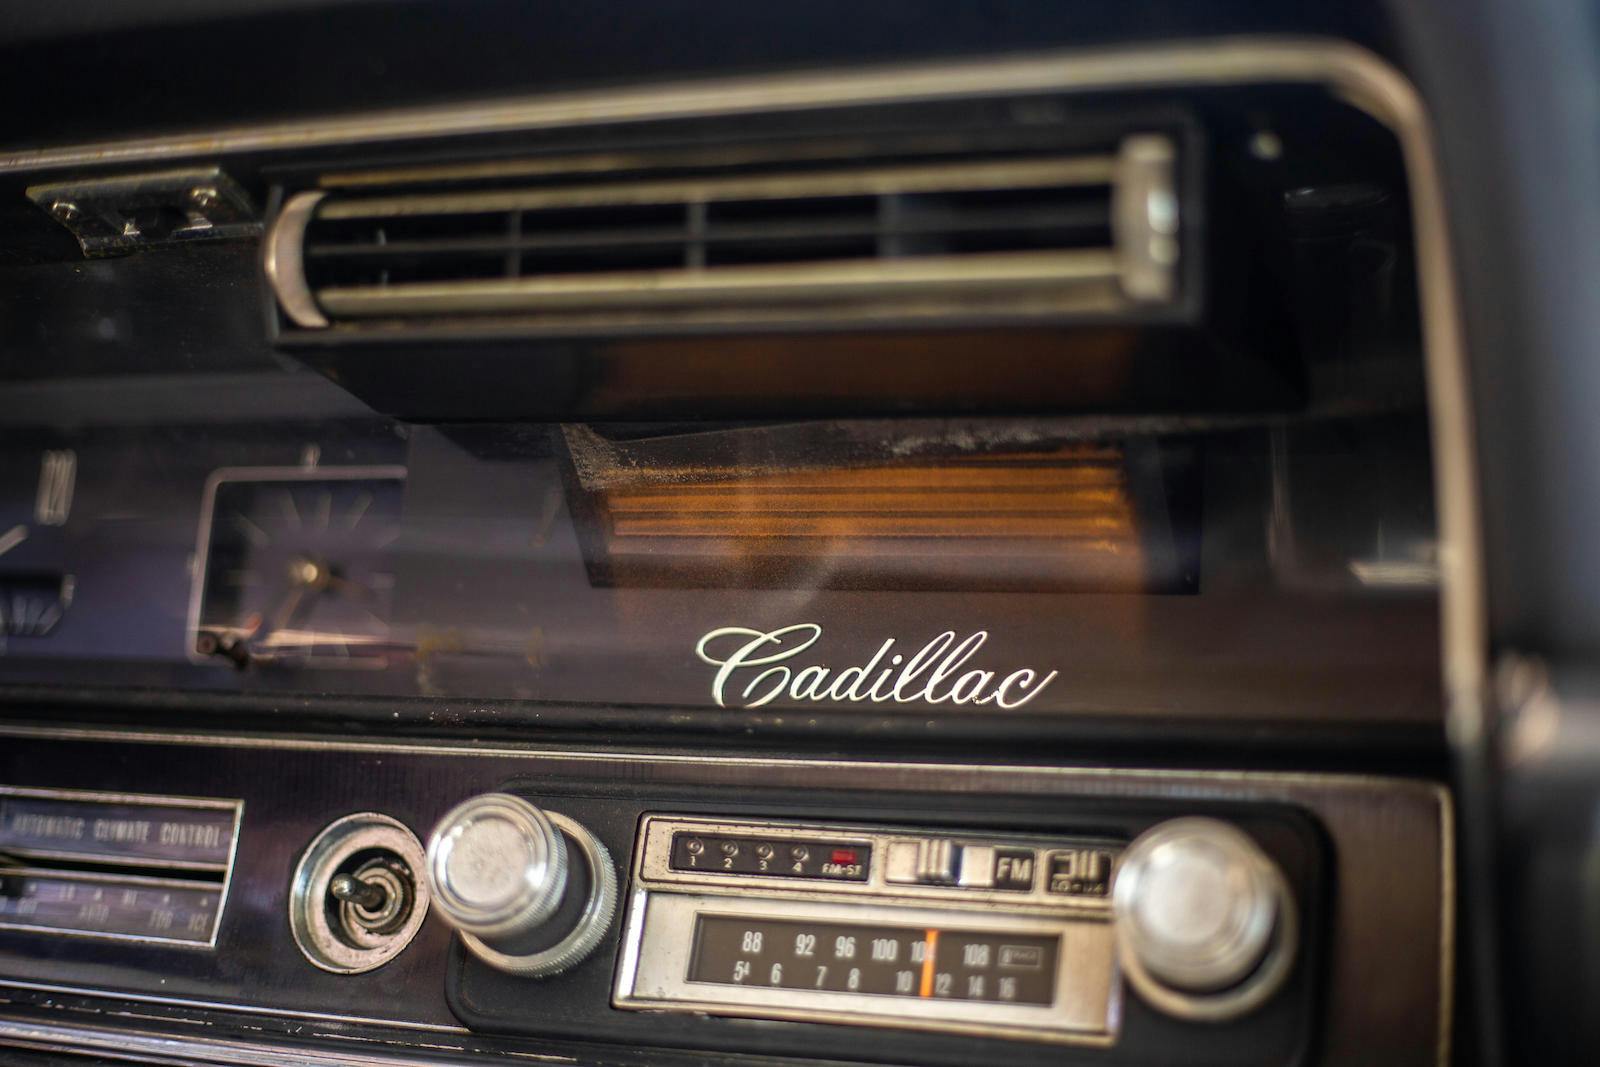 1967 Cadillac Eldorado radio